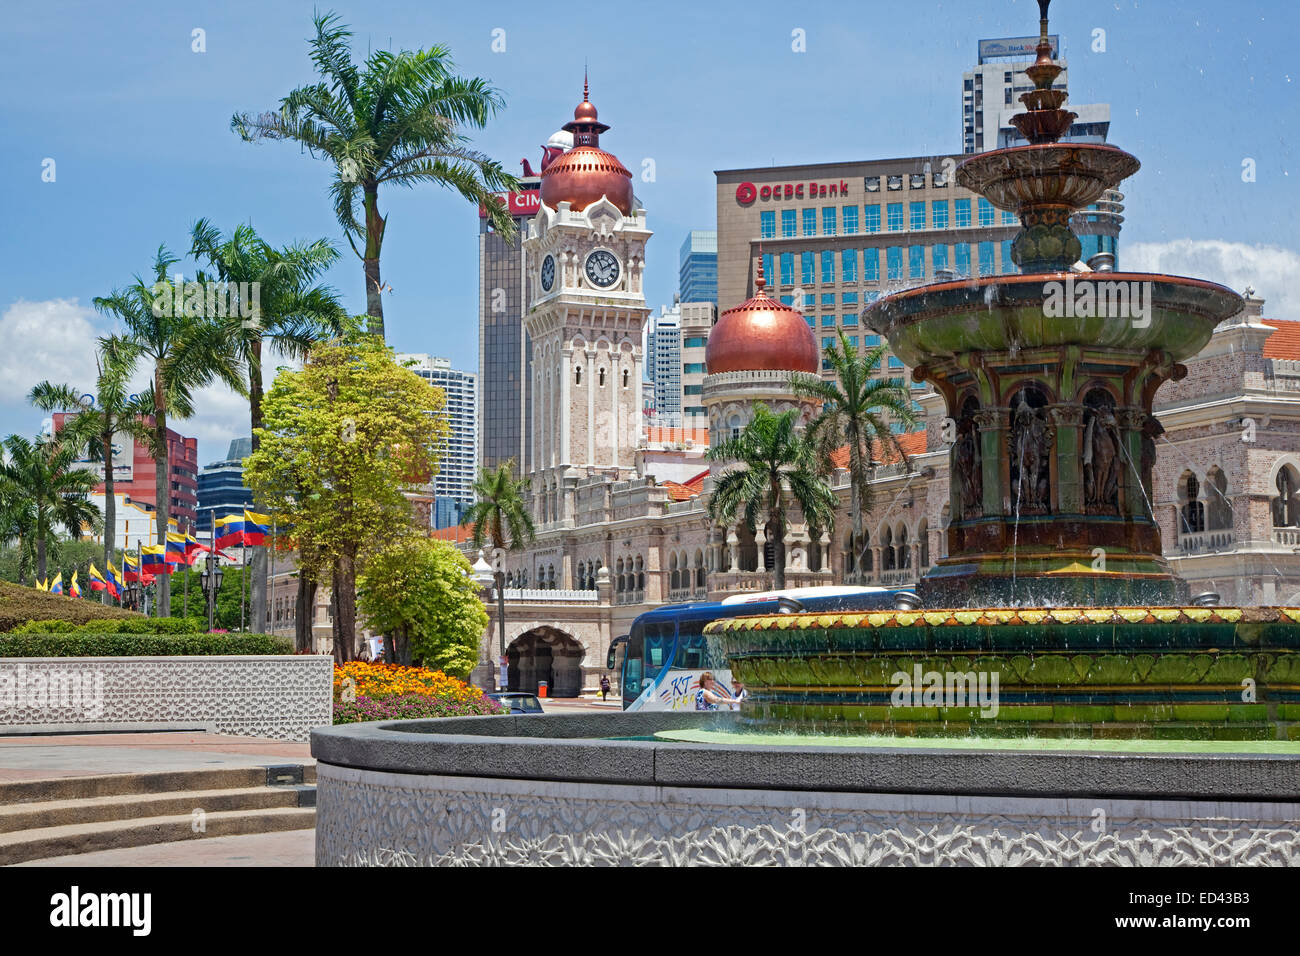 Merdeka Square montrant la fontaine et la tour de l'horloge du Sultan Abdul Samad Building dans la ville Kuala Lumpur, Malaisie Banque D'Images